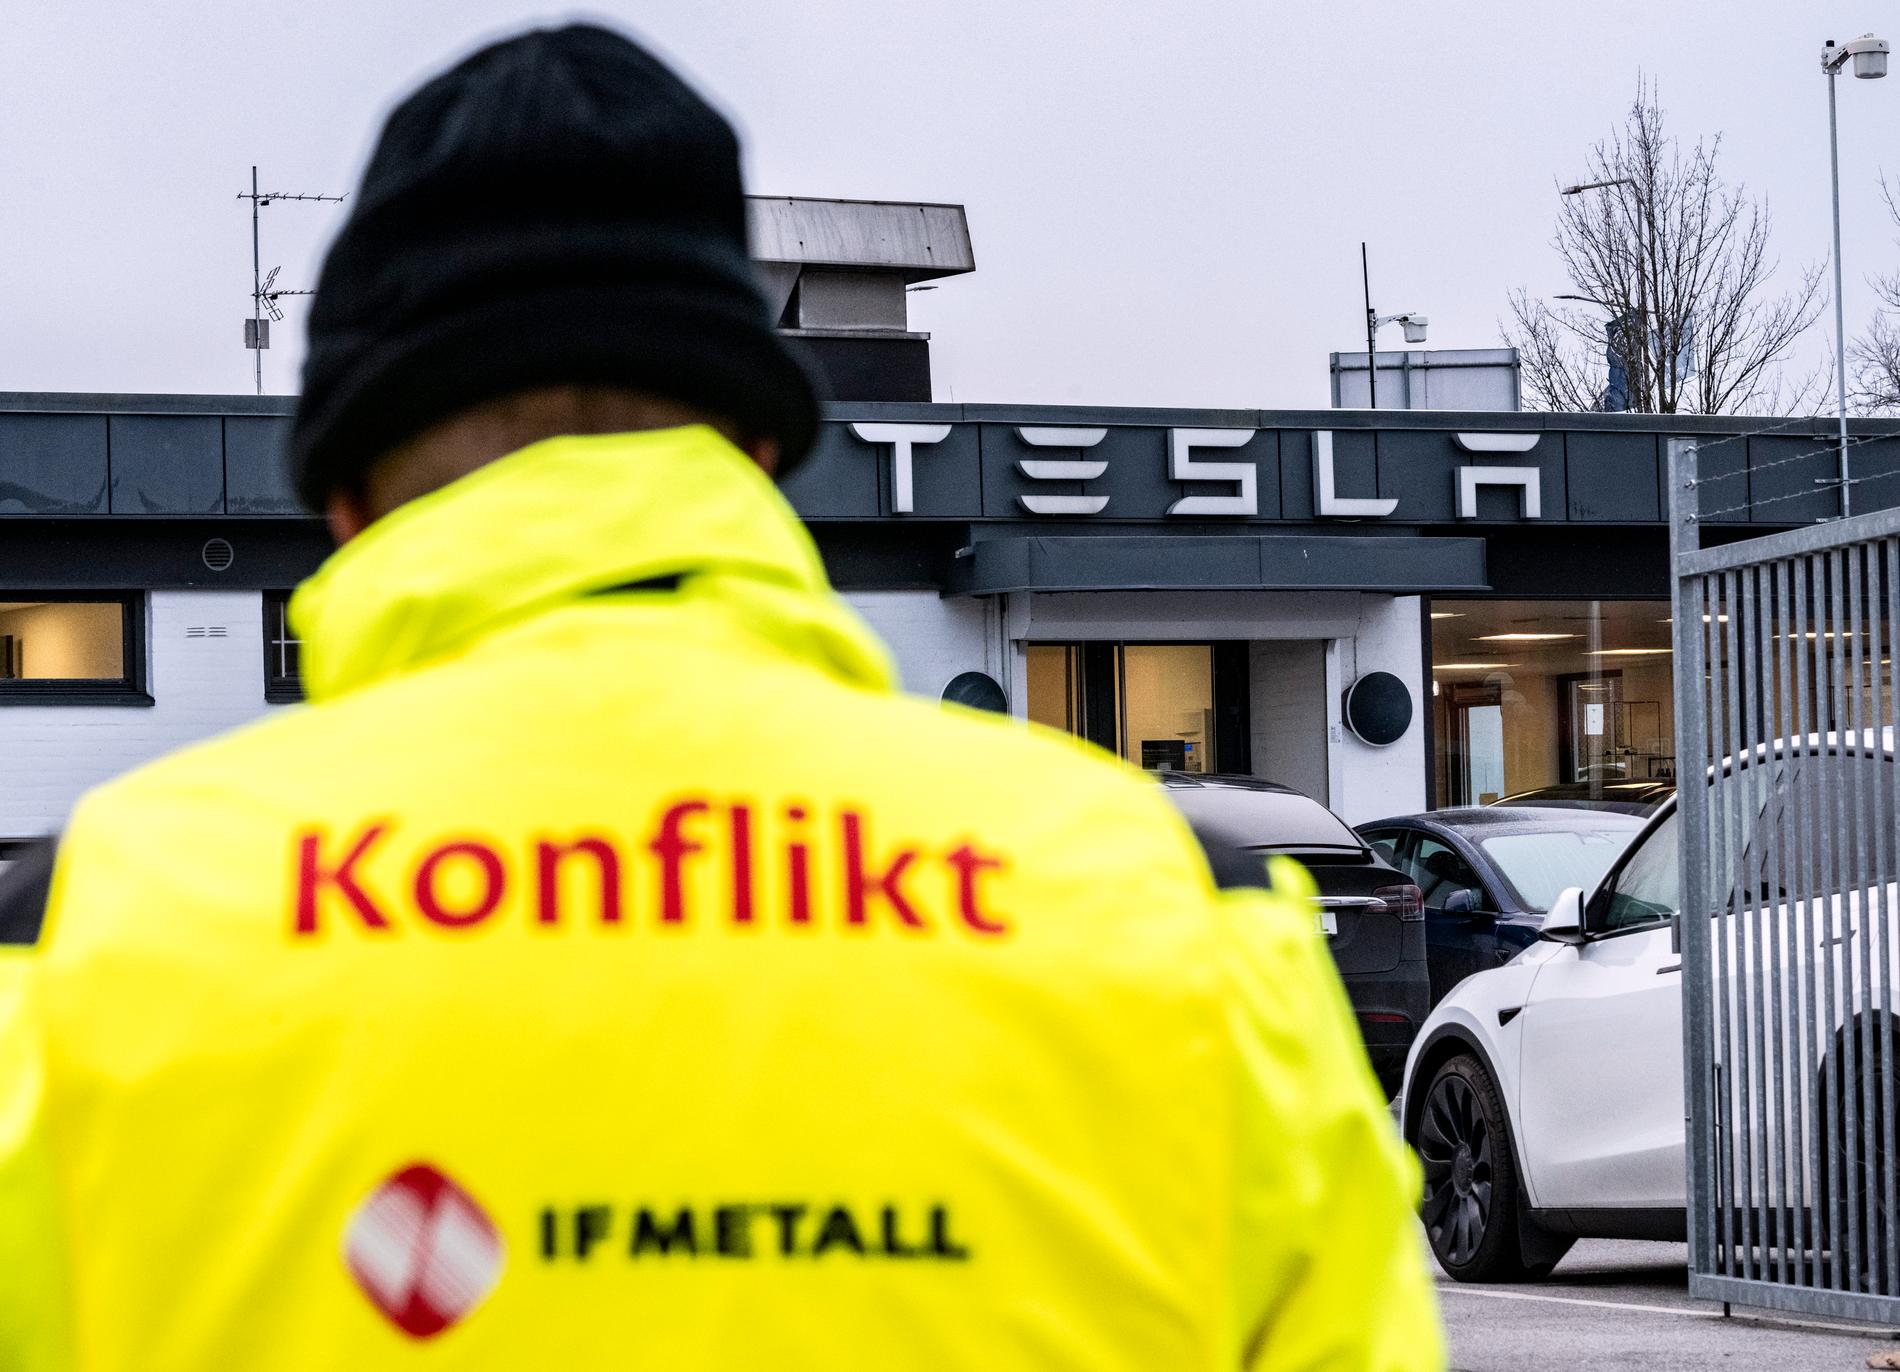 Anställda på Postnord sympatistrejkar eftersom Tesla inte tecknat kollektivavtal med IF Metall. Här är en strejkvakt från IF Metall utanför Tesla-anläggningen i Malmö.